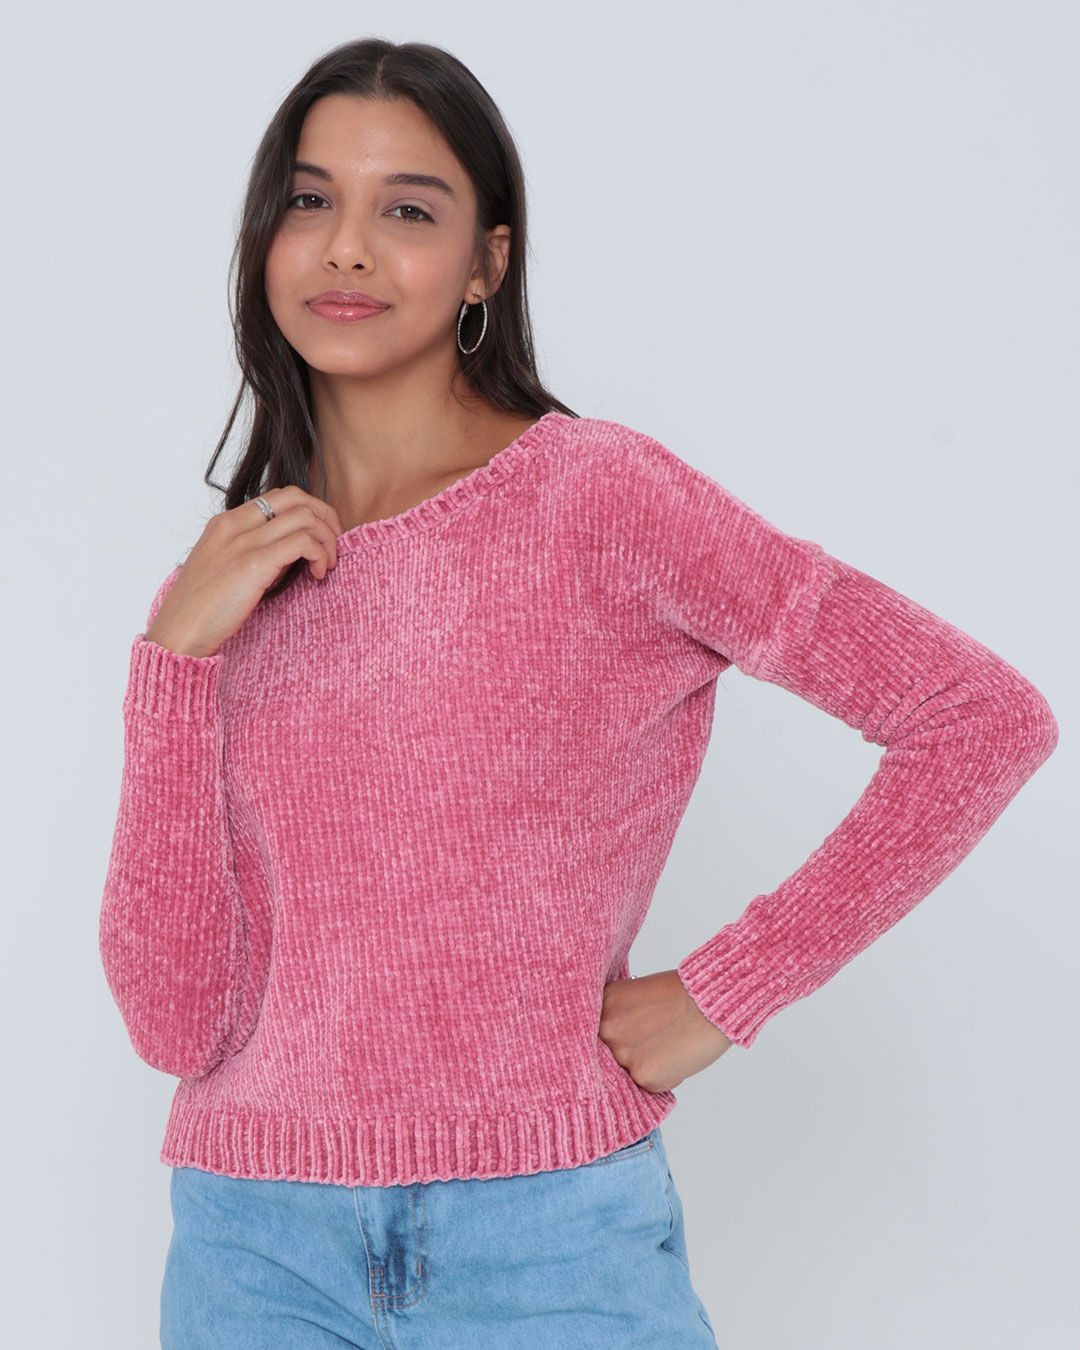 Tricot-Chenille-Sweaterjf-201-Faz---Rosa-Claro